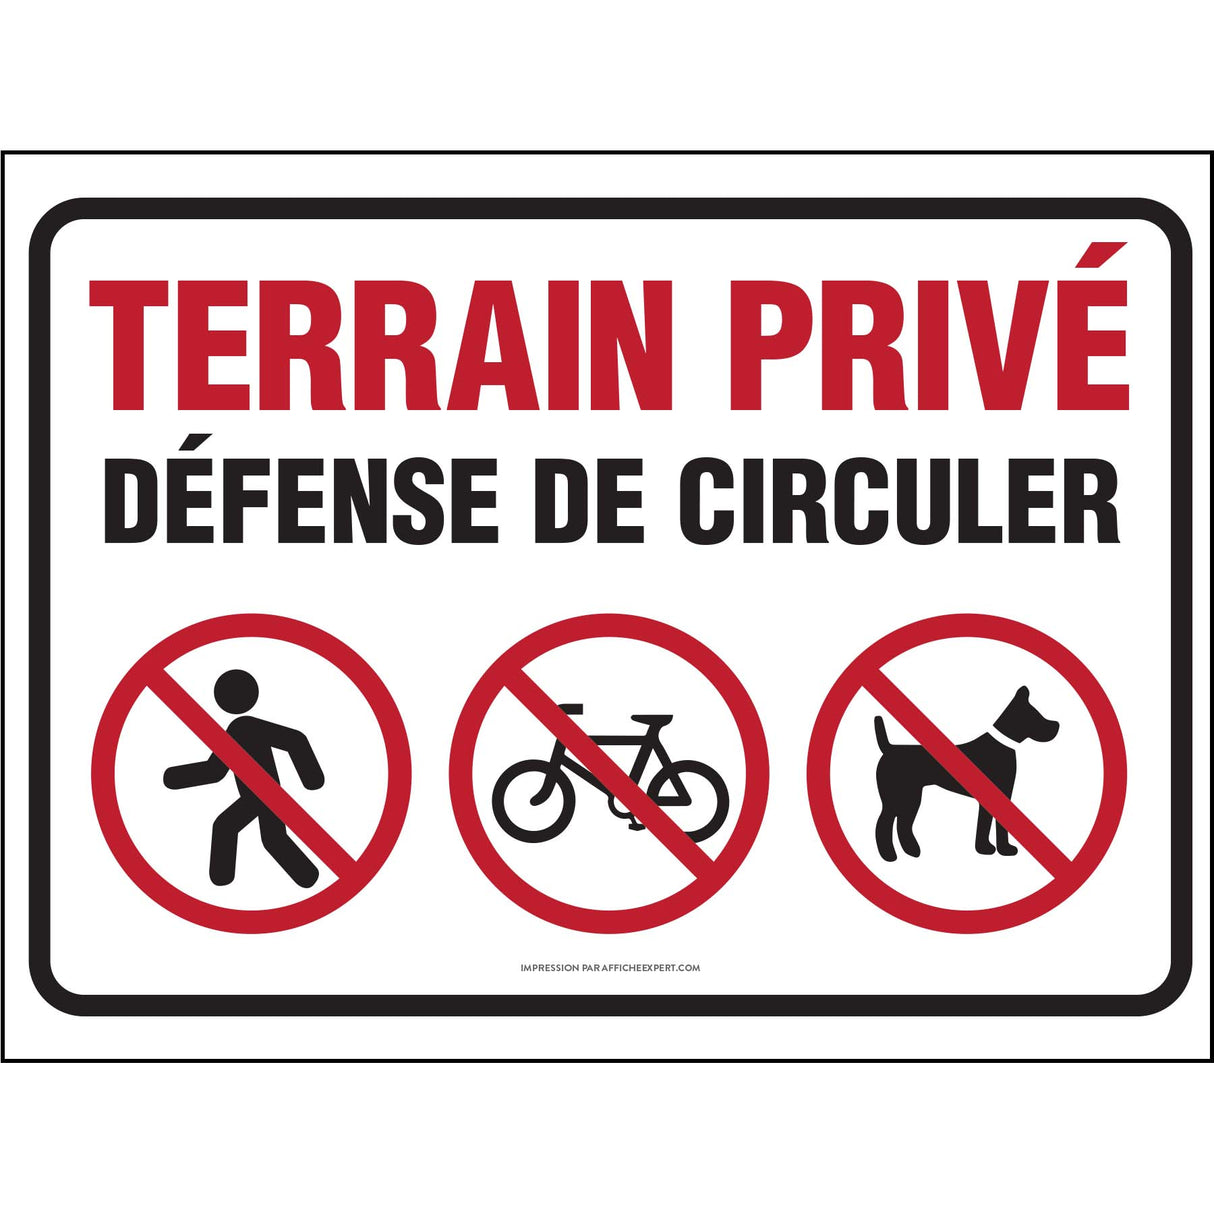 Terrain privé - Défense de circuler (Piétons, vélos et chiens)